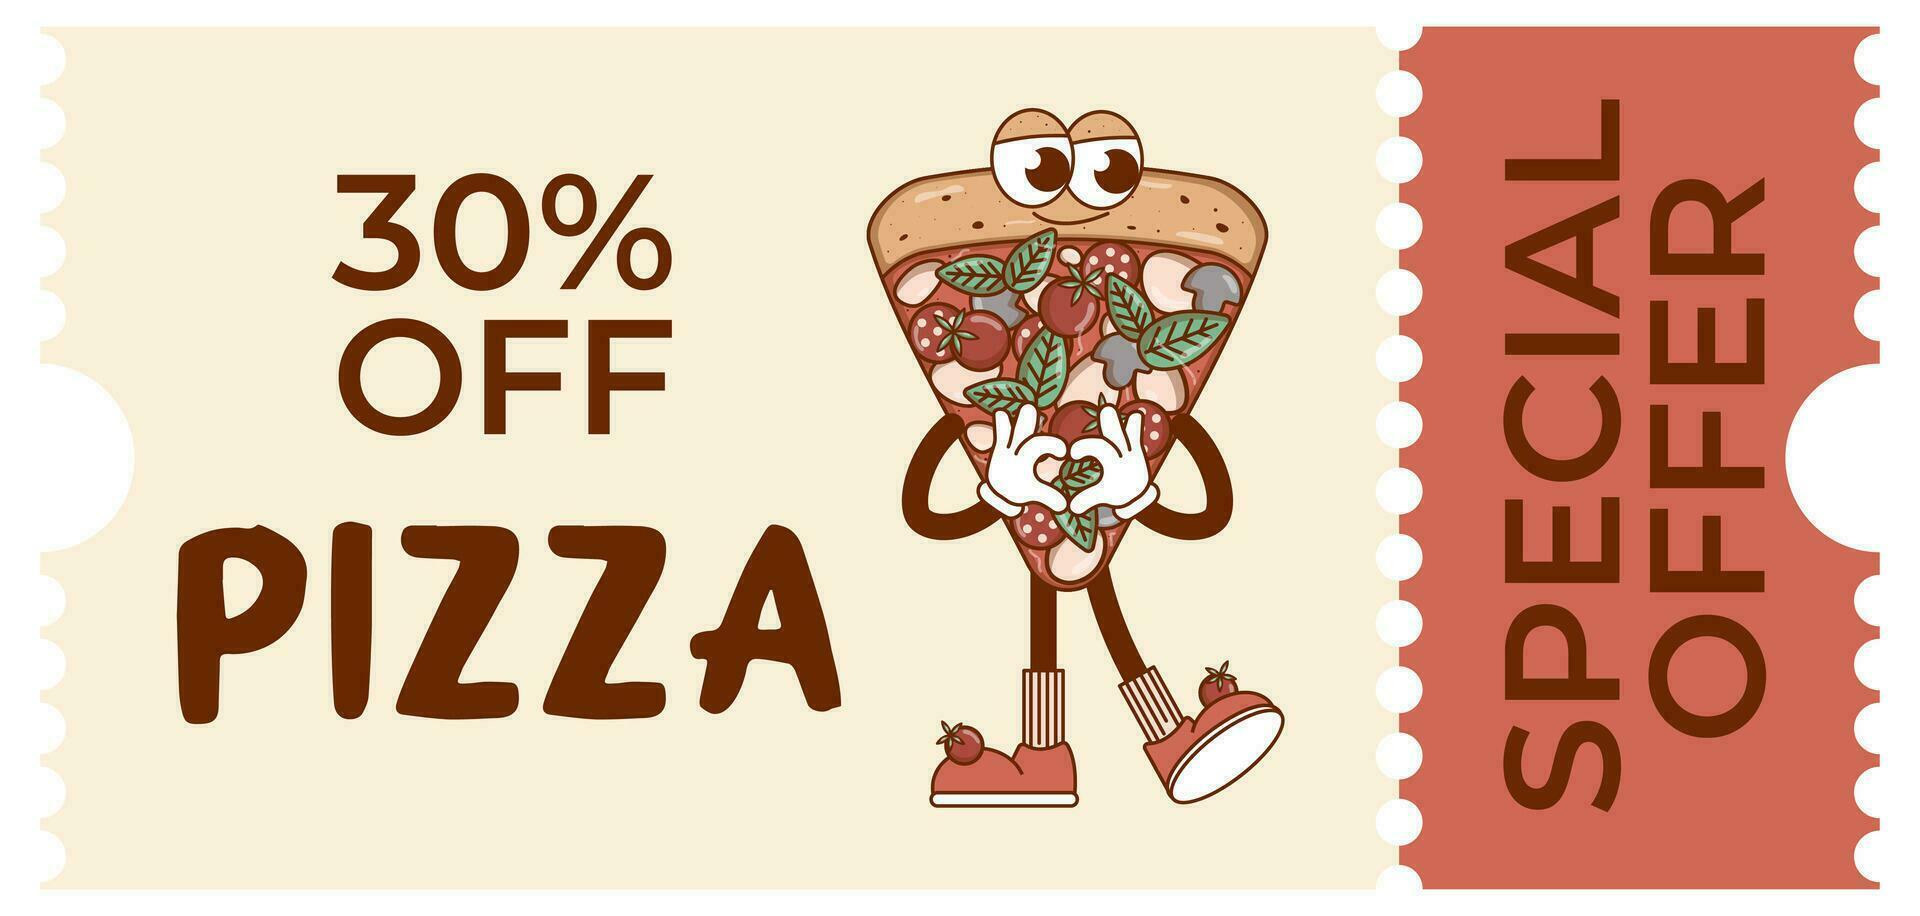 italiano rápido comida pedazo personaje Pizza. cupón promoción, descuento bandera, regalo vale. retro colores. plano estilo. vector ilustración.